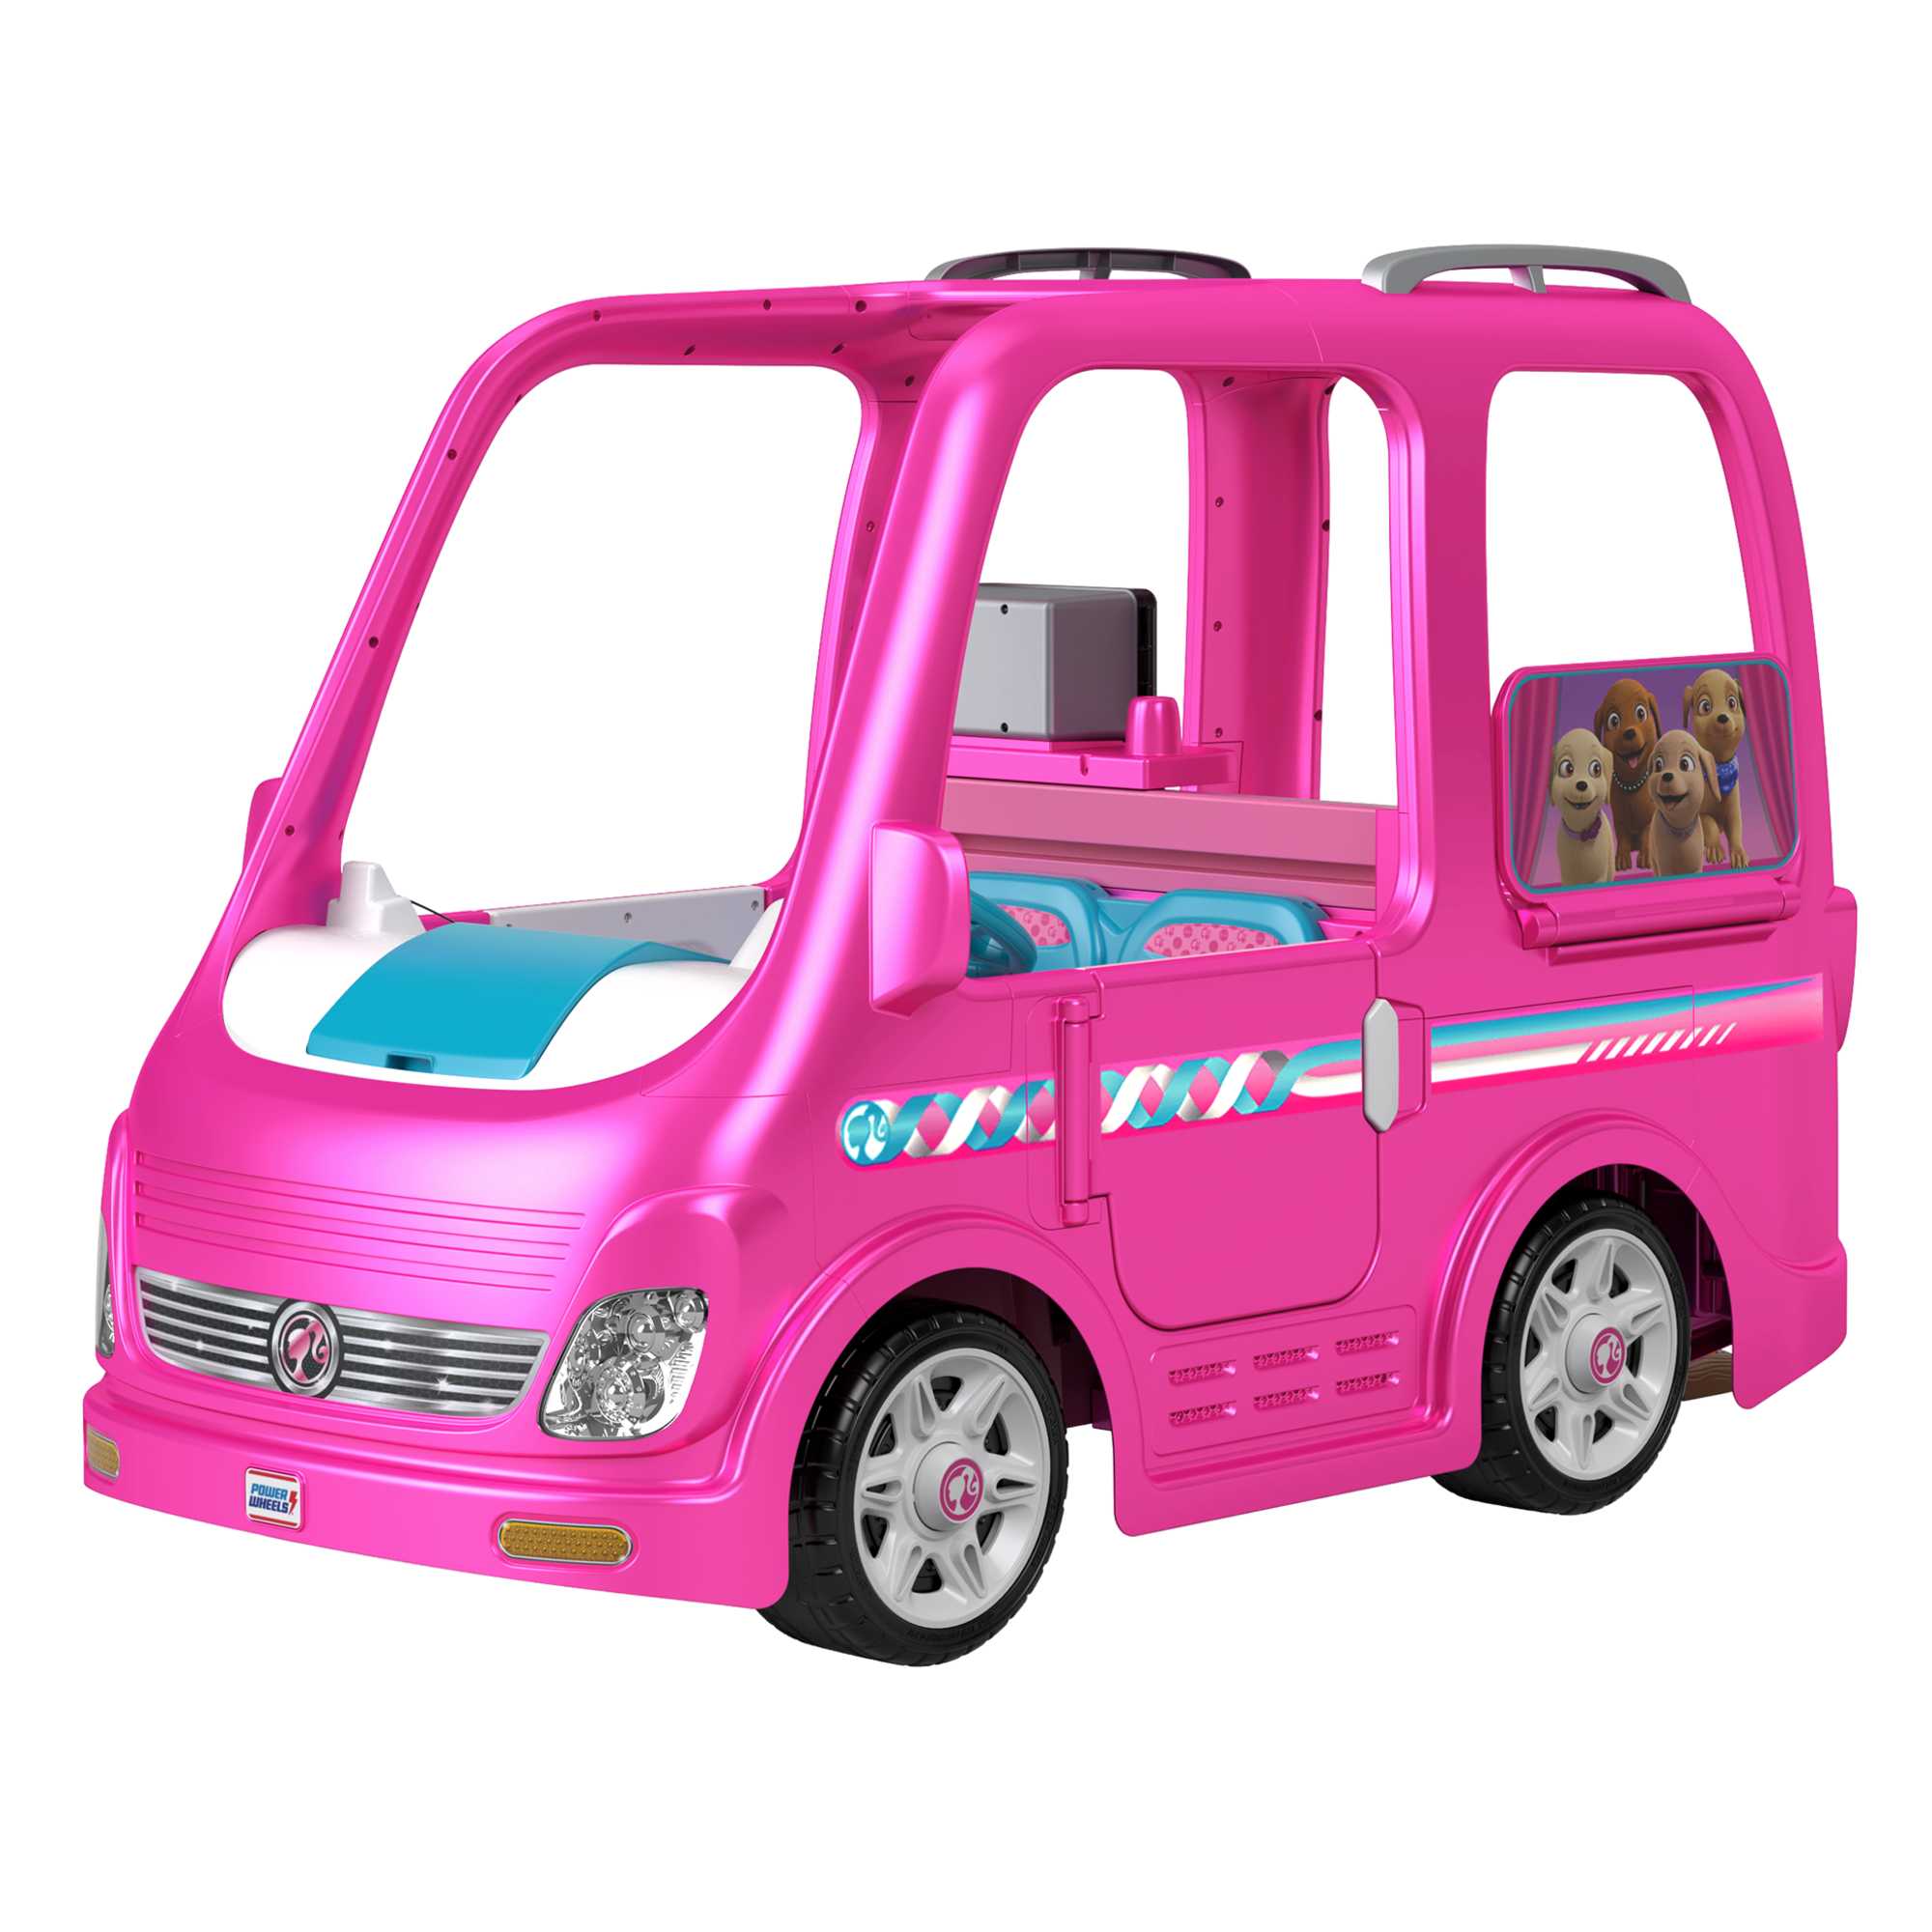 Barbie Dream Camper Pink Pop Out Caravan Playset With Pool